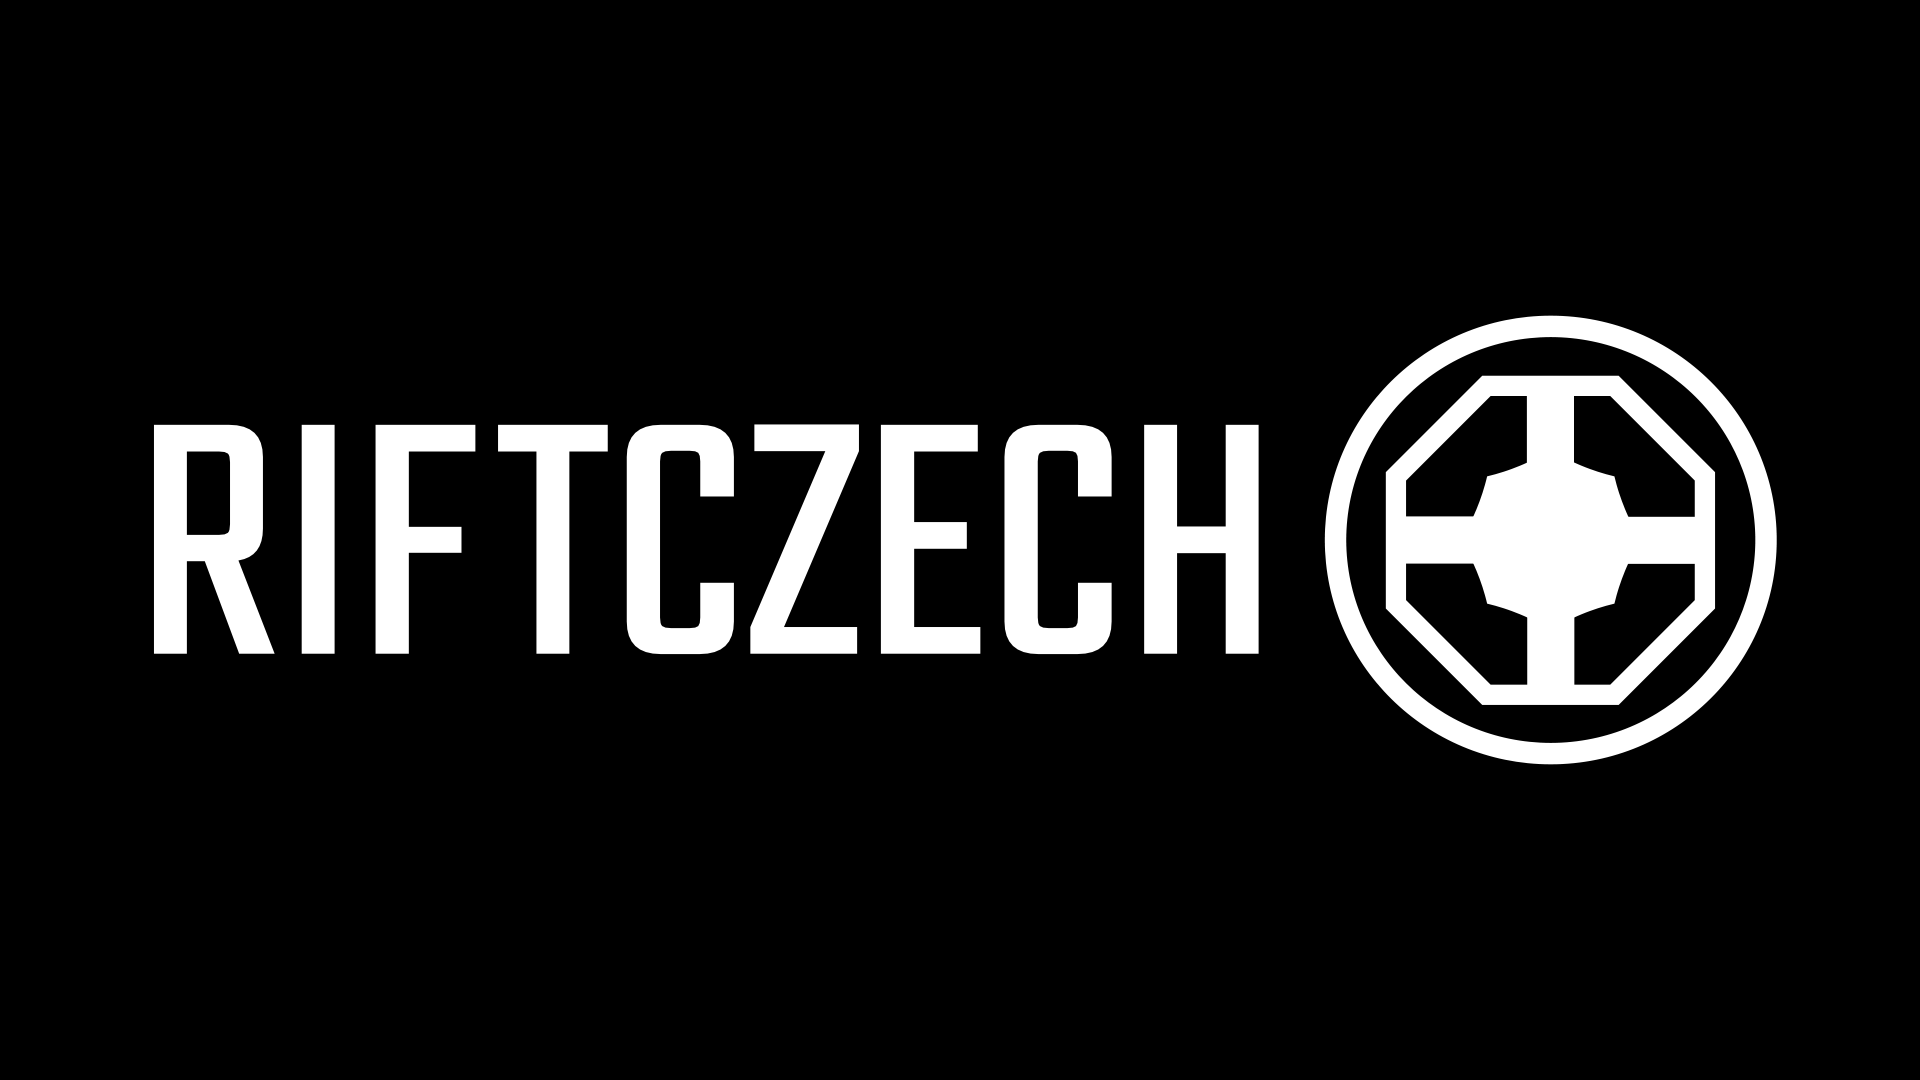 Jedenáctý RIFTCZECH! O startu Challengers, LEC a LCS a probuzení Mortschete